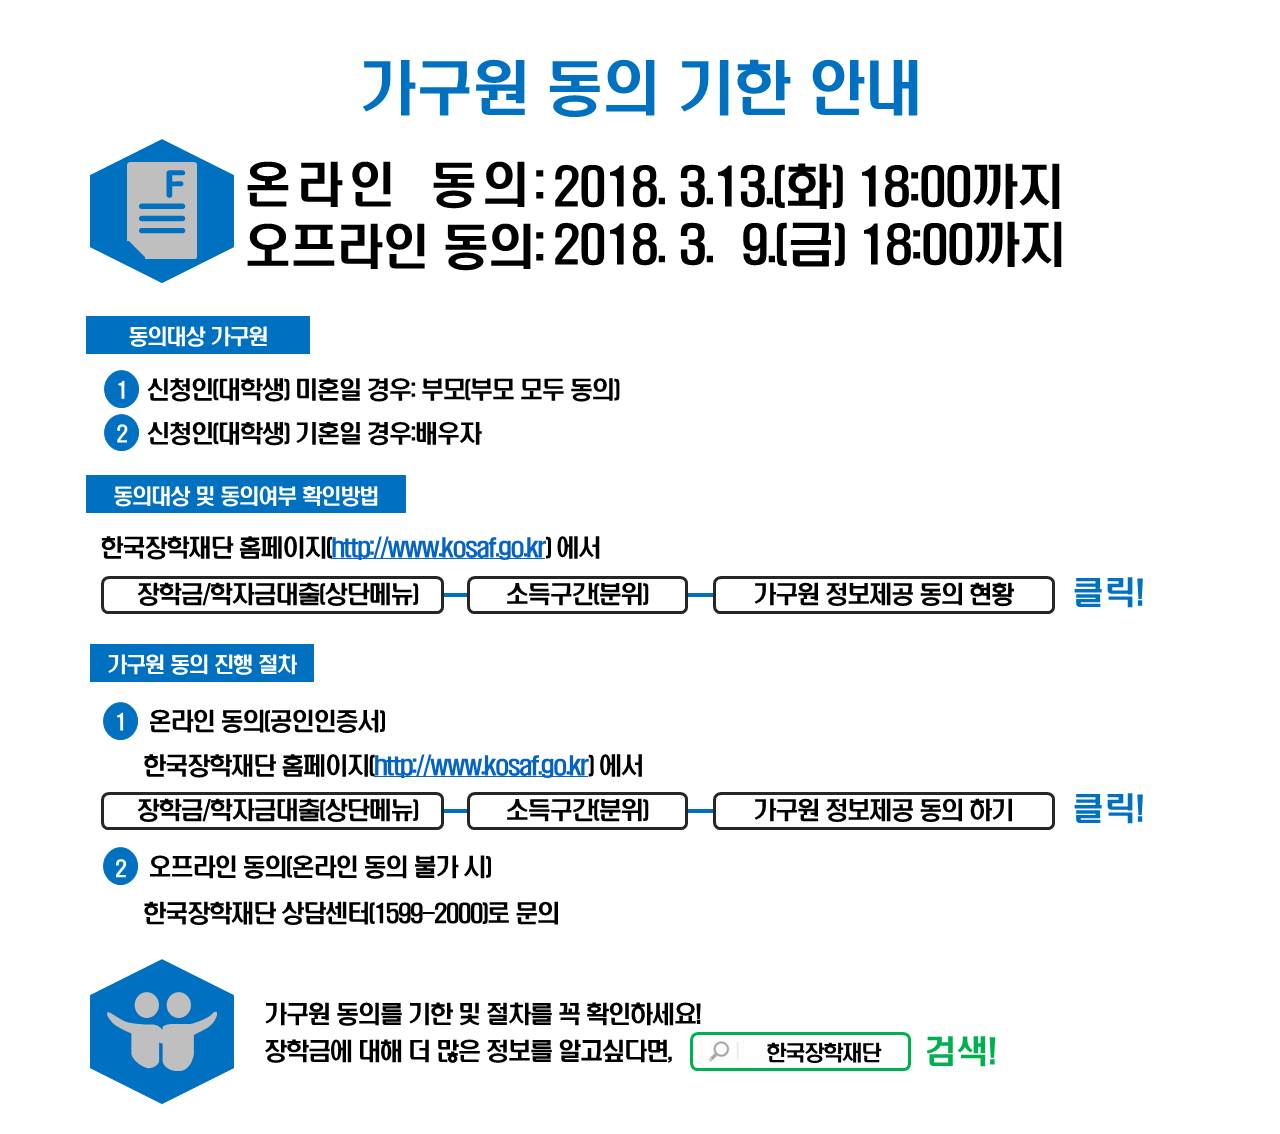 2018-1 국가장학금 신청자 가구원 동의 안내